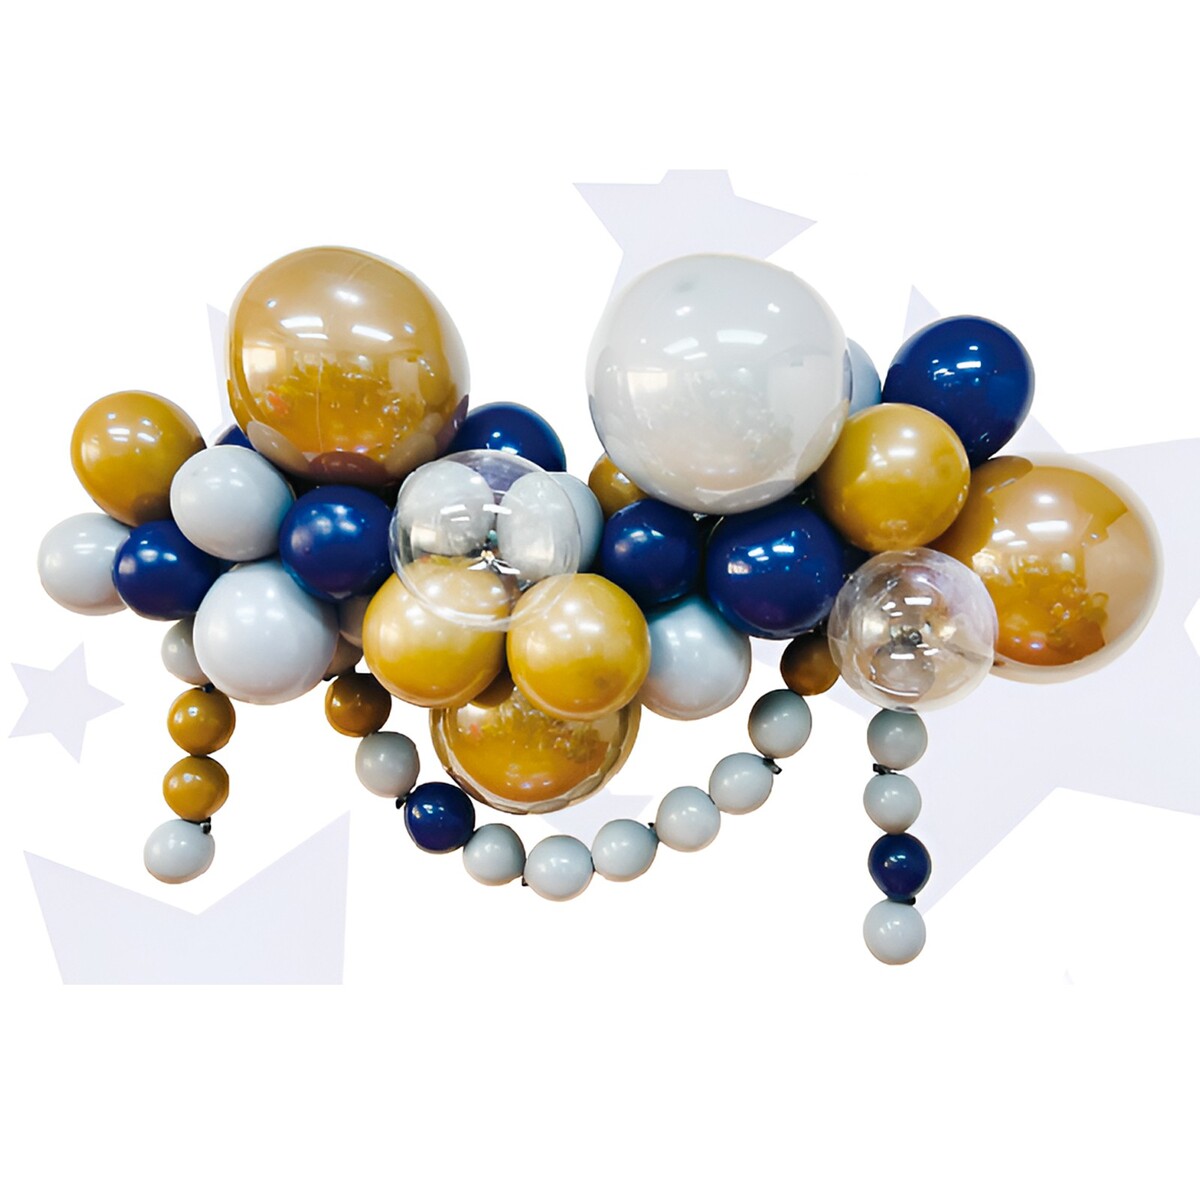 Набор для создания композиций из воздушных шаров, набор 52 шт., коричневый, серебро, синий 100622 набор для создания пасхальной подвески